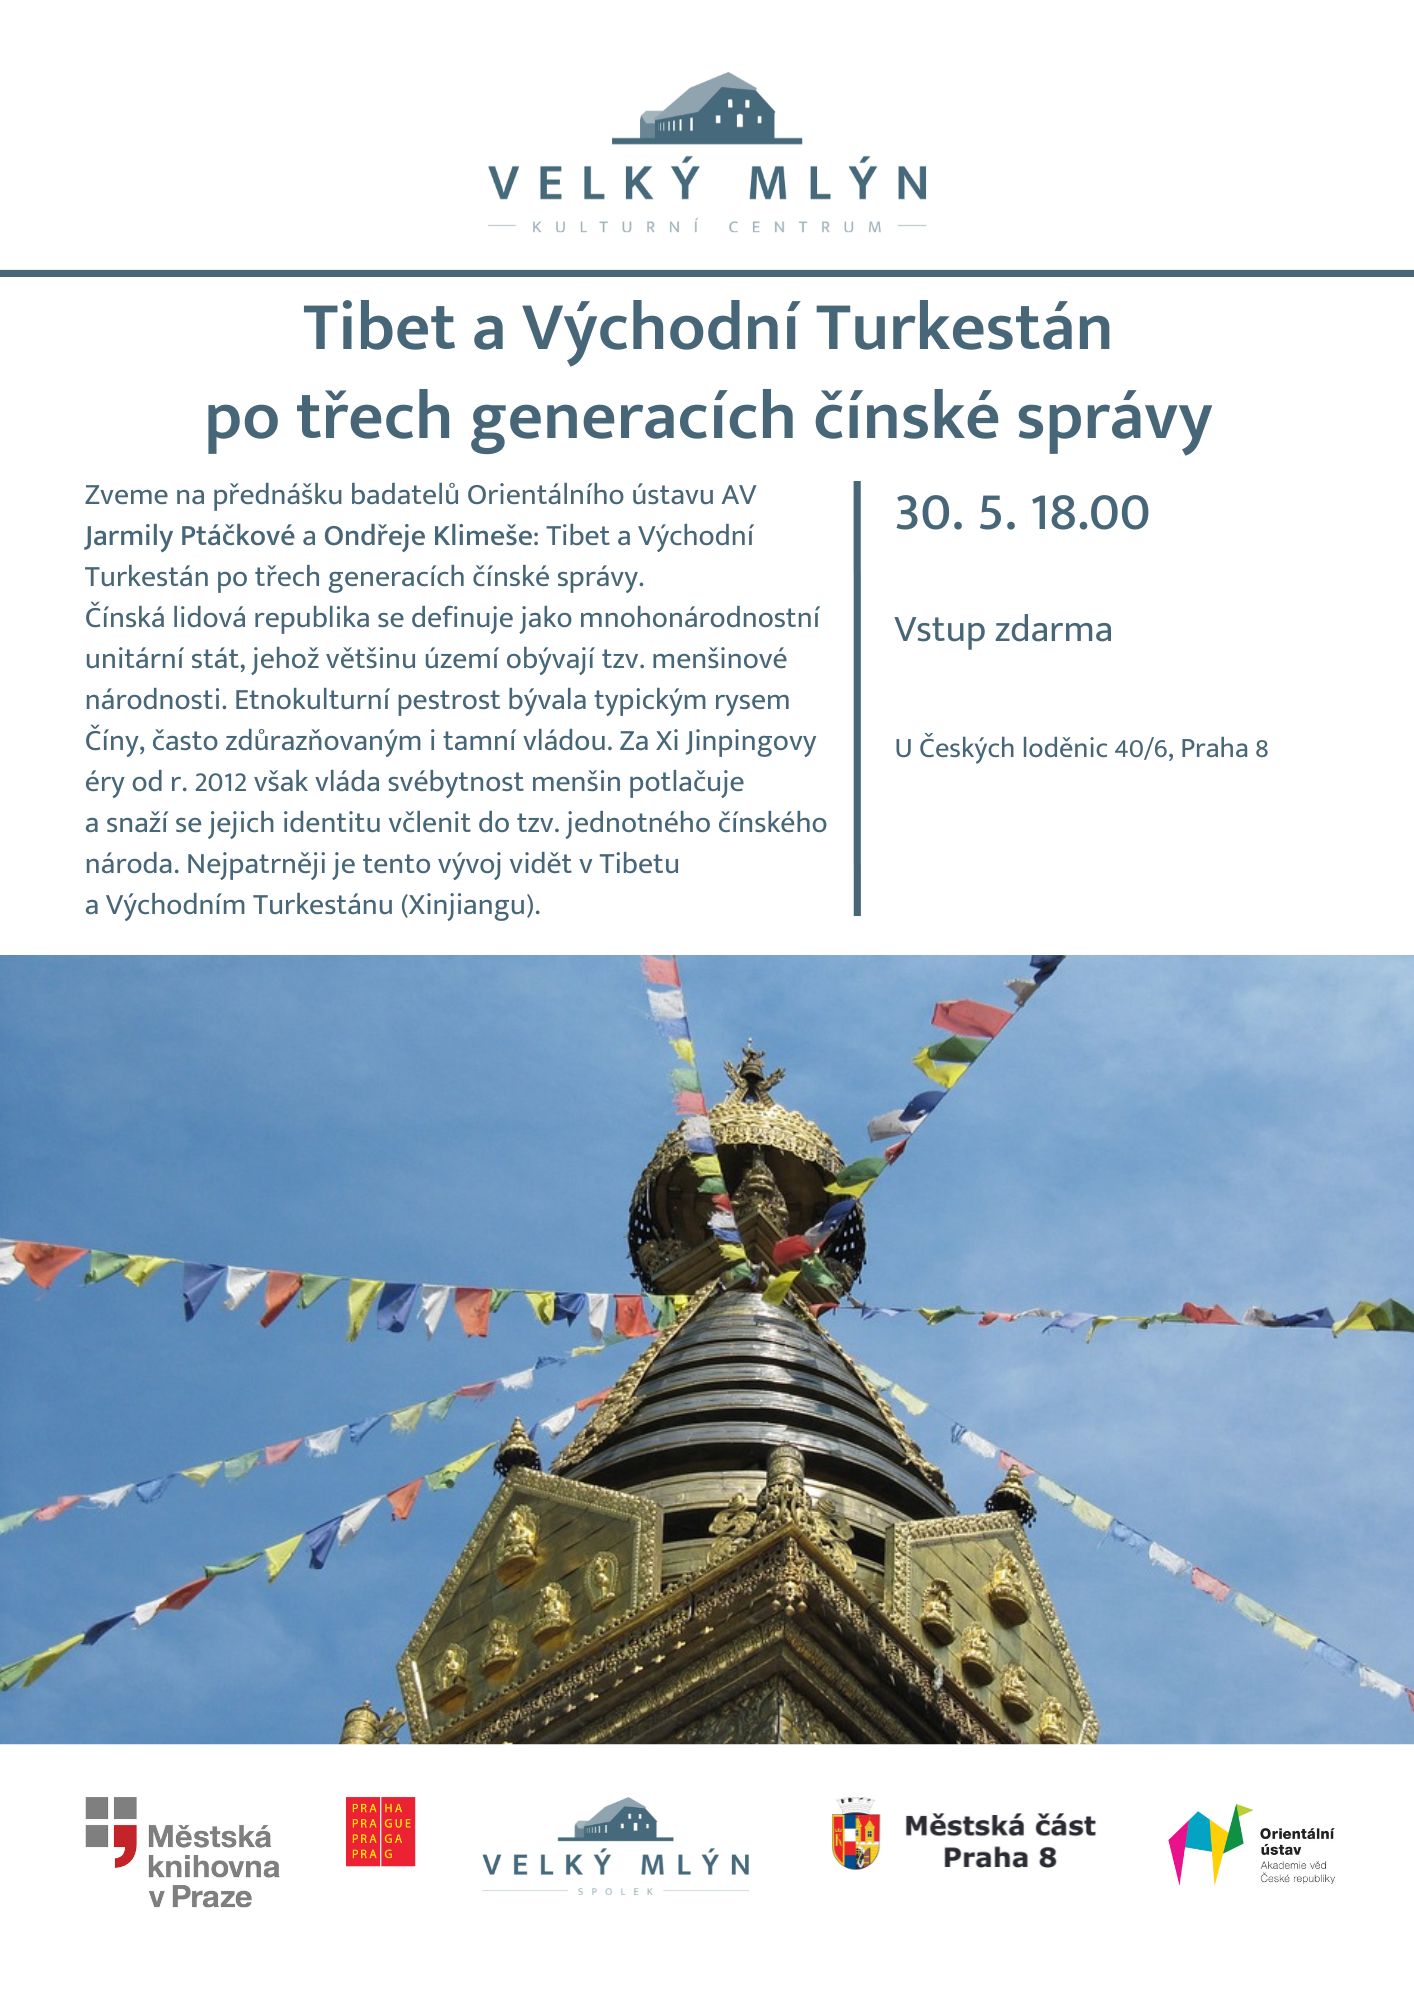 Tibet plakát Velký mlýn - Tibet a Východní Turekstán